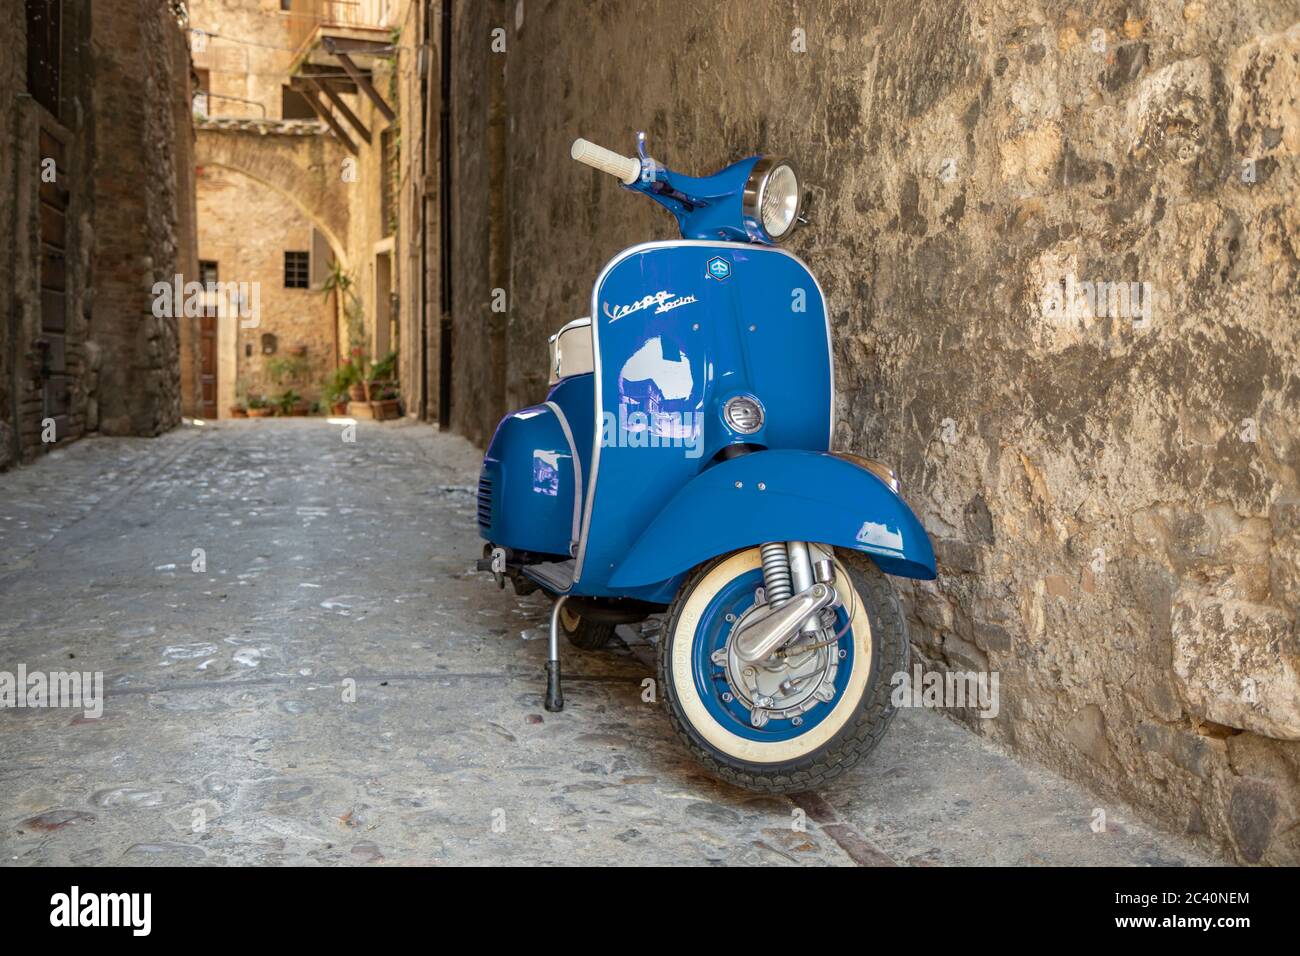 30 juin 2019 - Rome, Latium, Italie - UN Piaggio Vespa Sprint bleu, garée dans une allée d'un ancien village, en Italie. Le symbole de scooter de l'italien Banque D'Images